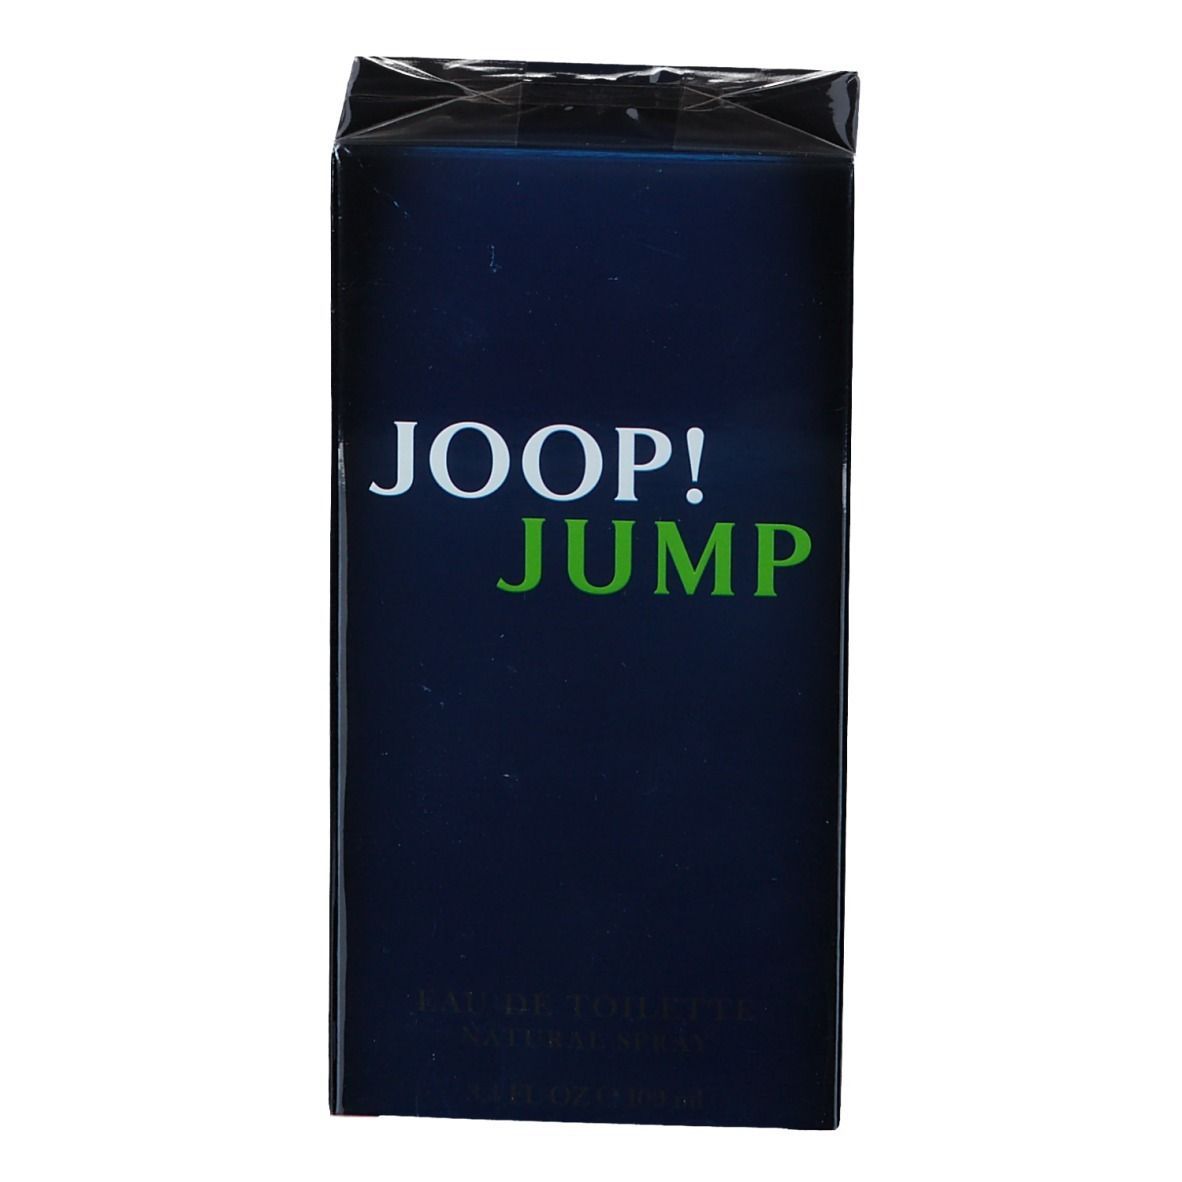 JOOP! JUMP